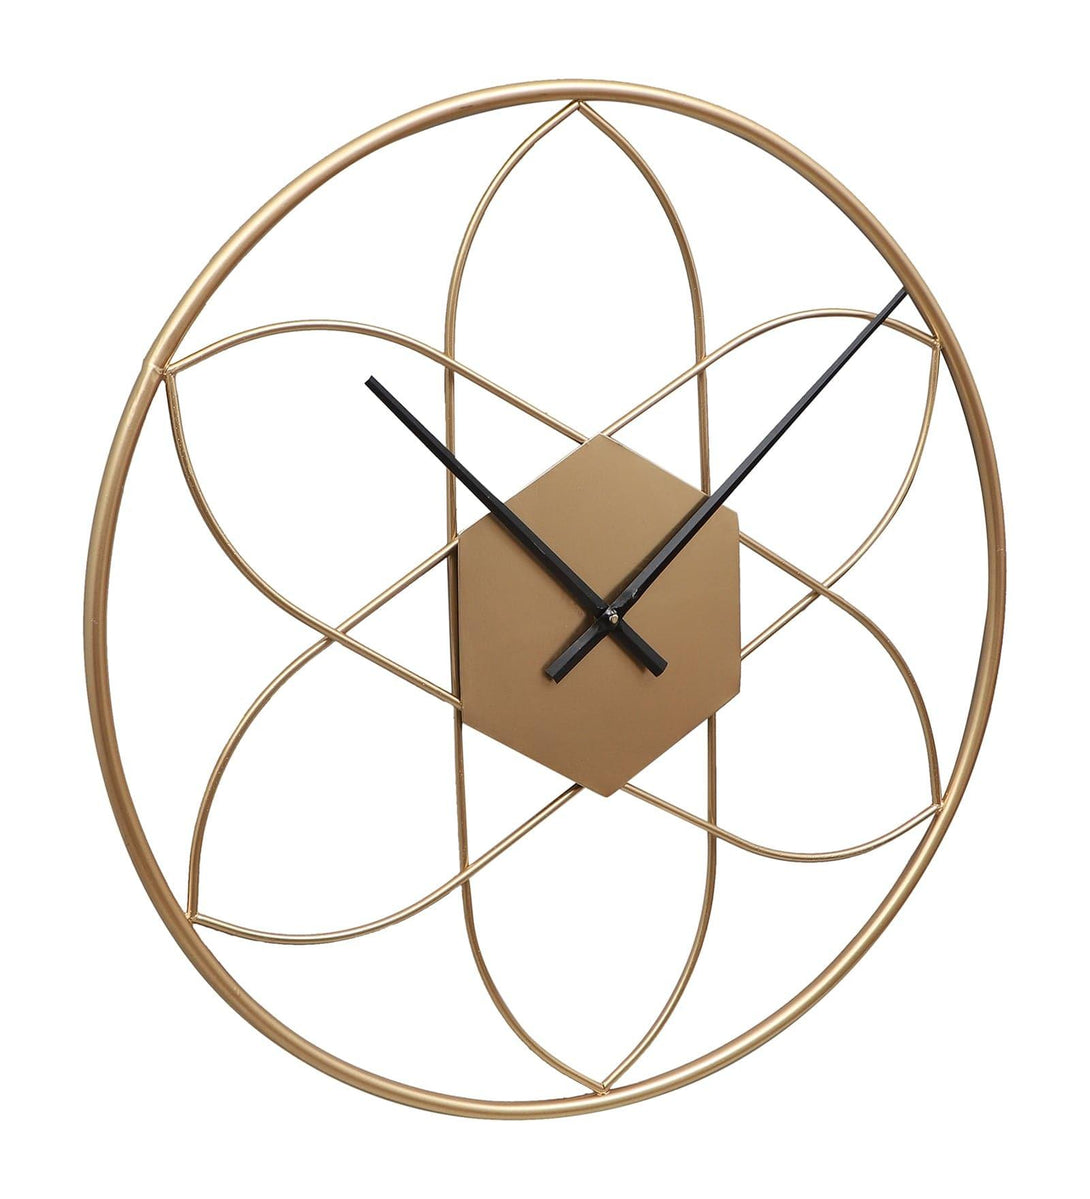 Buy Wall Clock - Flora Frisk Wall Clock at Vaaree online